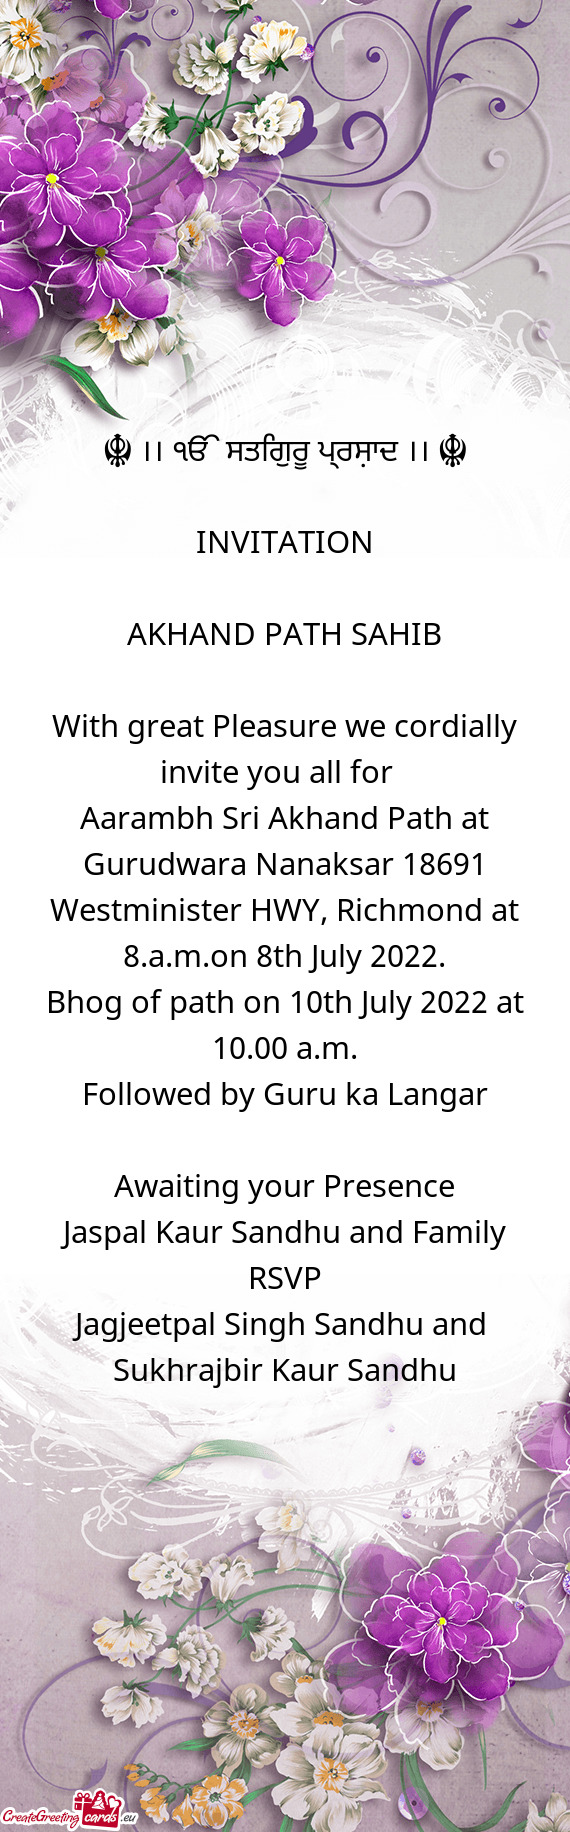 Bhog of path on 10th July 2022 at 10.00 a.m